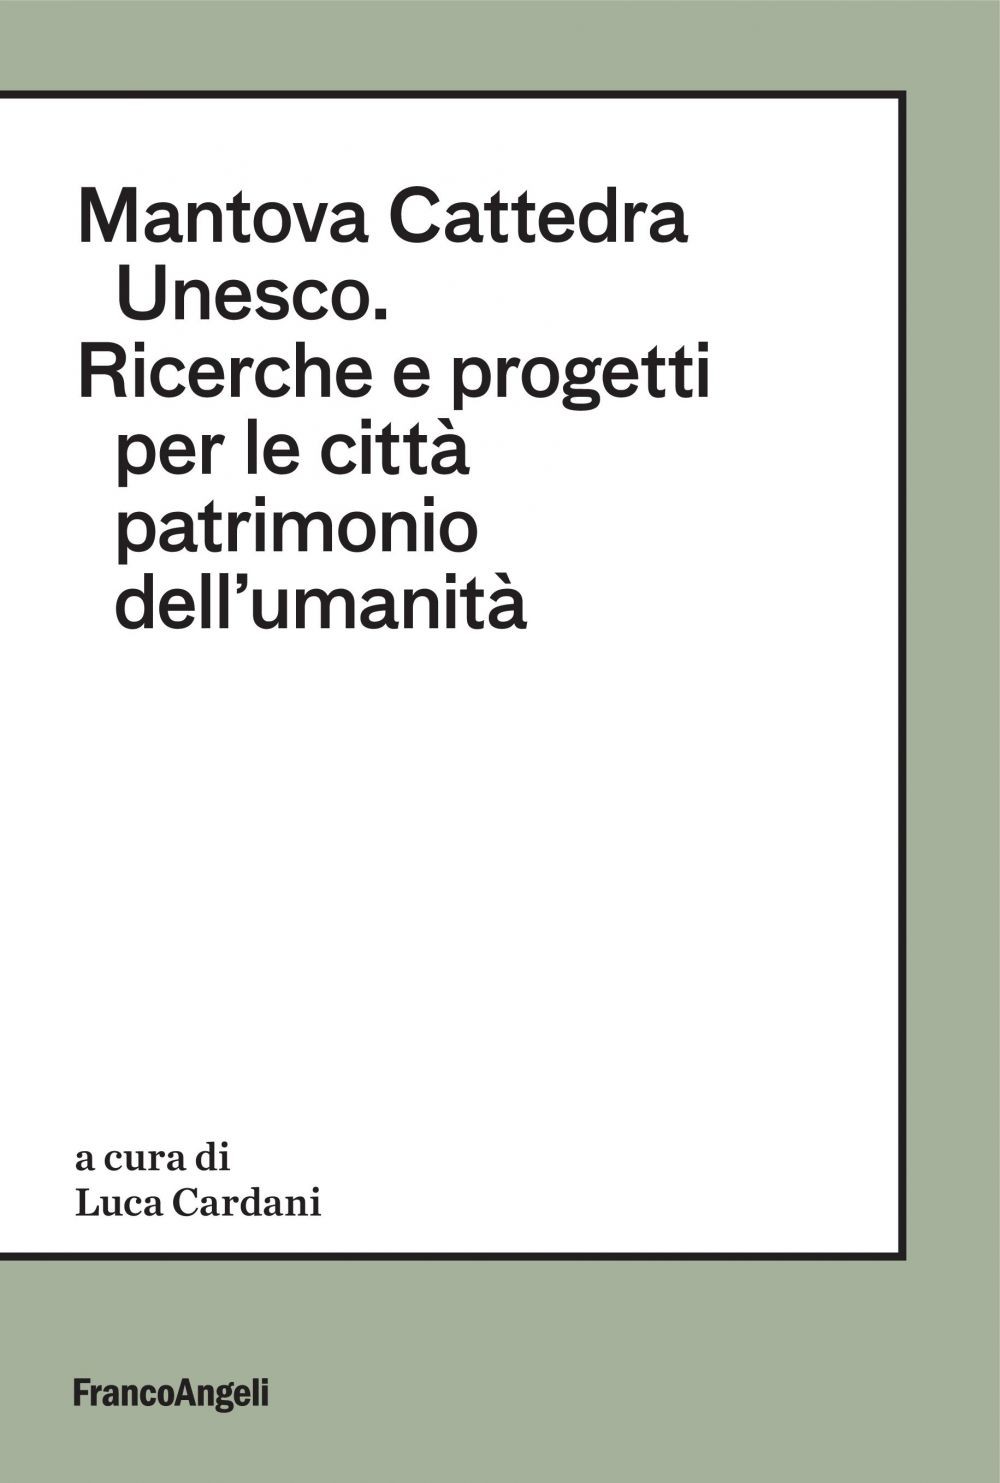 Mantova Cattedra Unesco - Librerie.coop